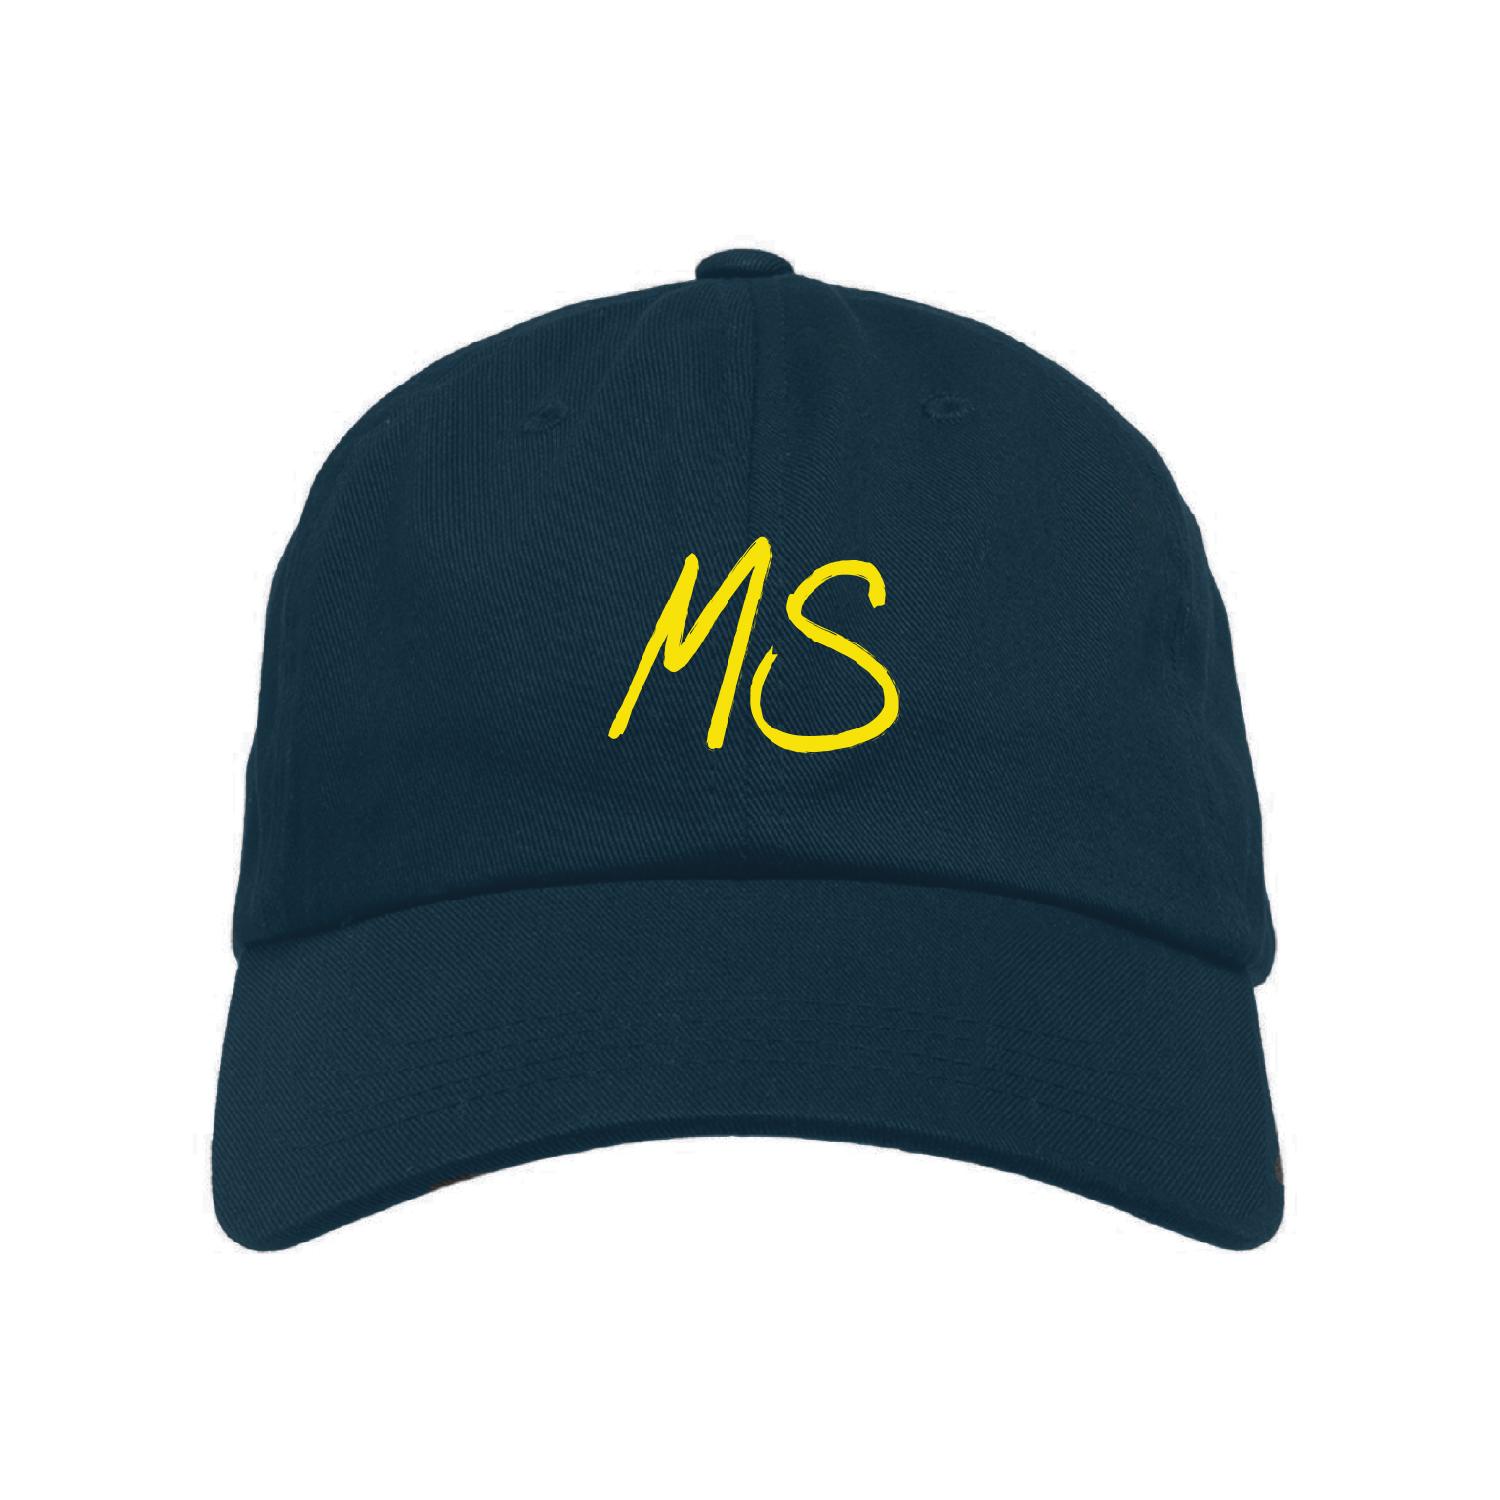 Schweighöfer MS Cap Hat/Cap onesize, navy blau